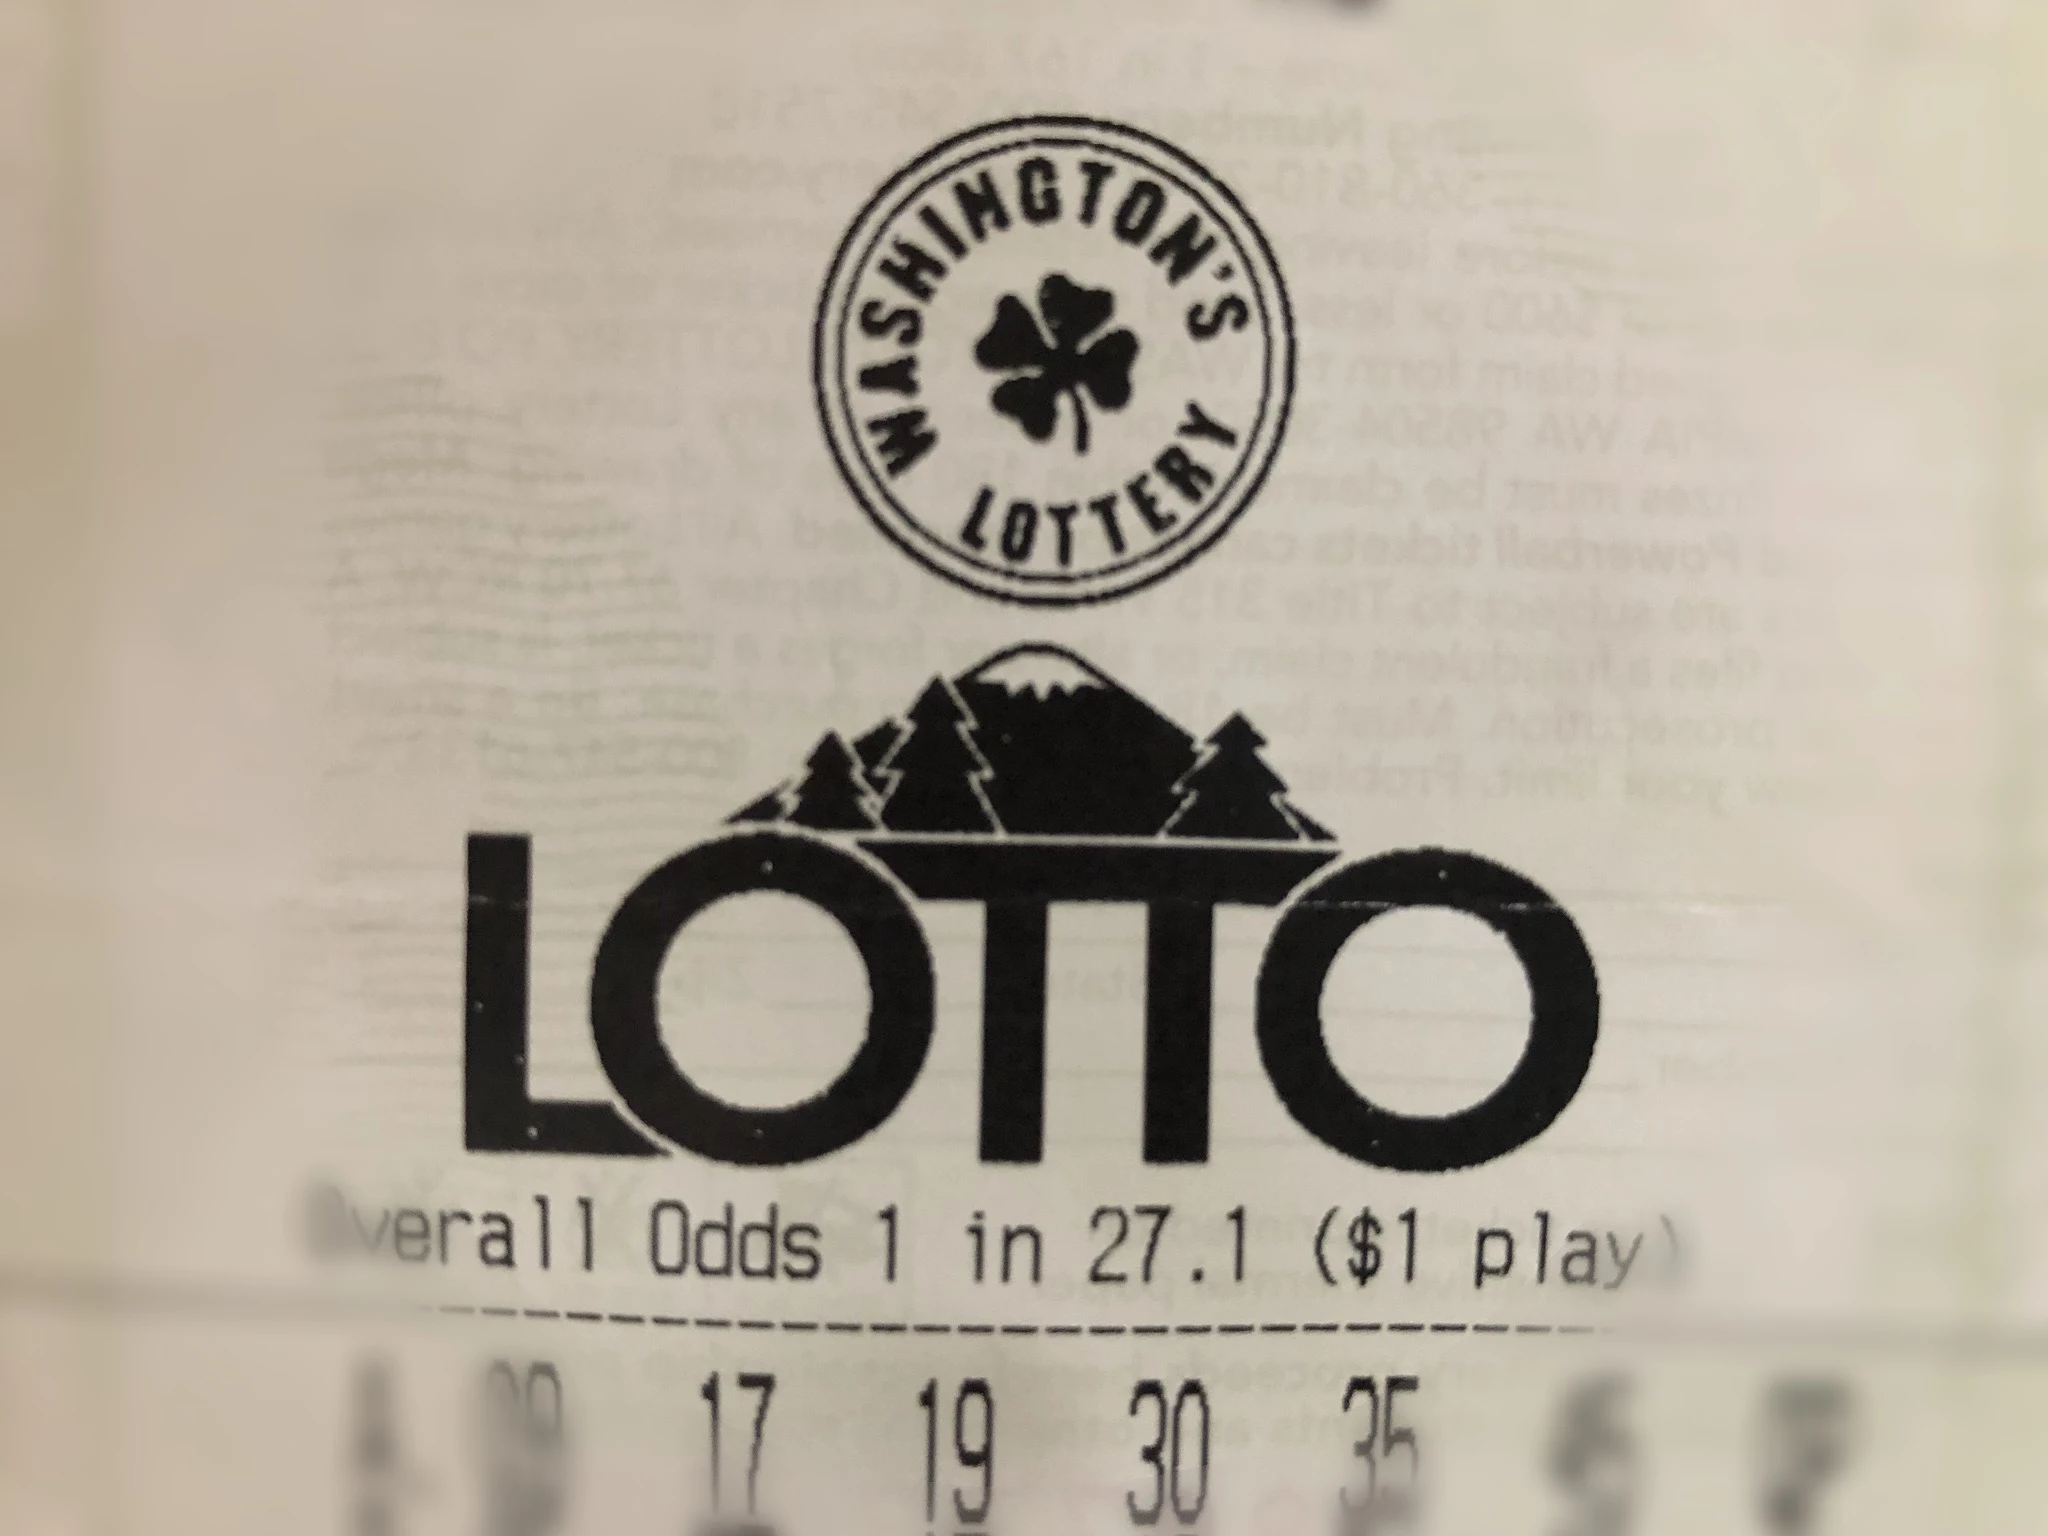 Washington Lottery 983 The KEY